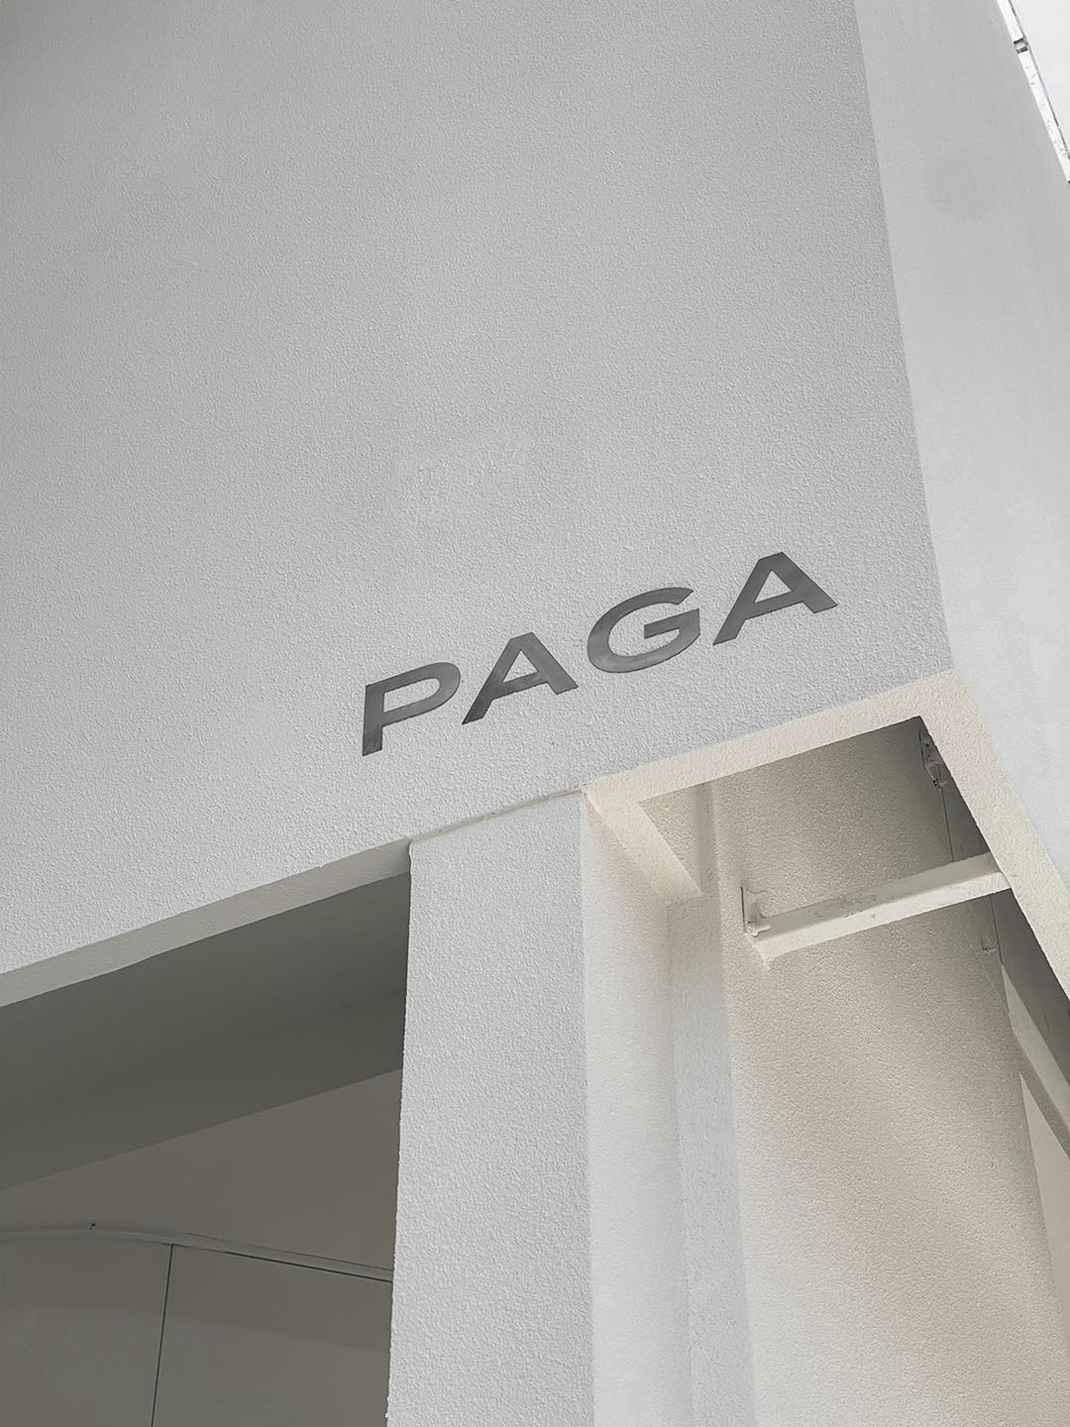 咖啡馆PAGA microroastery 泰国 咖啡店 字体设计 白色空间 logo设计 vi设计 空间设计